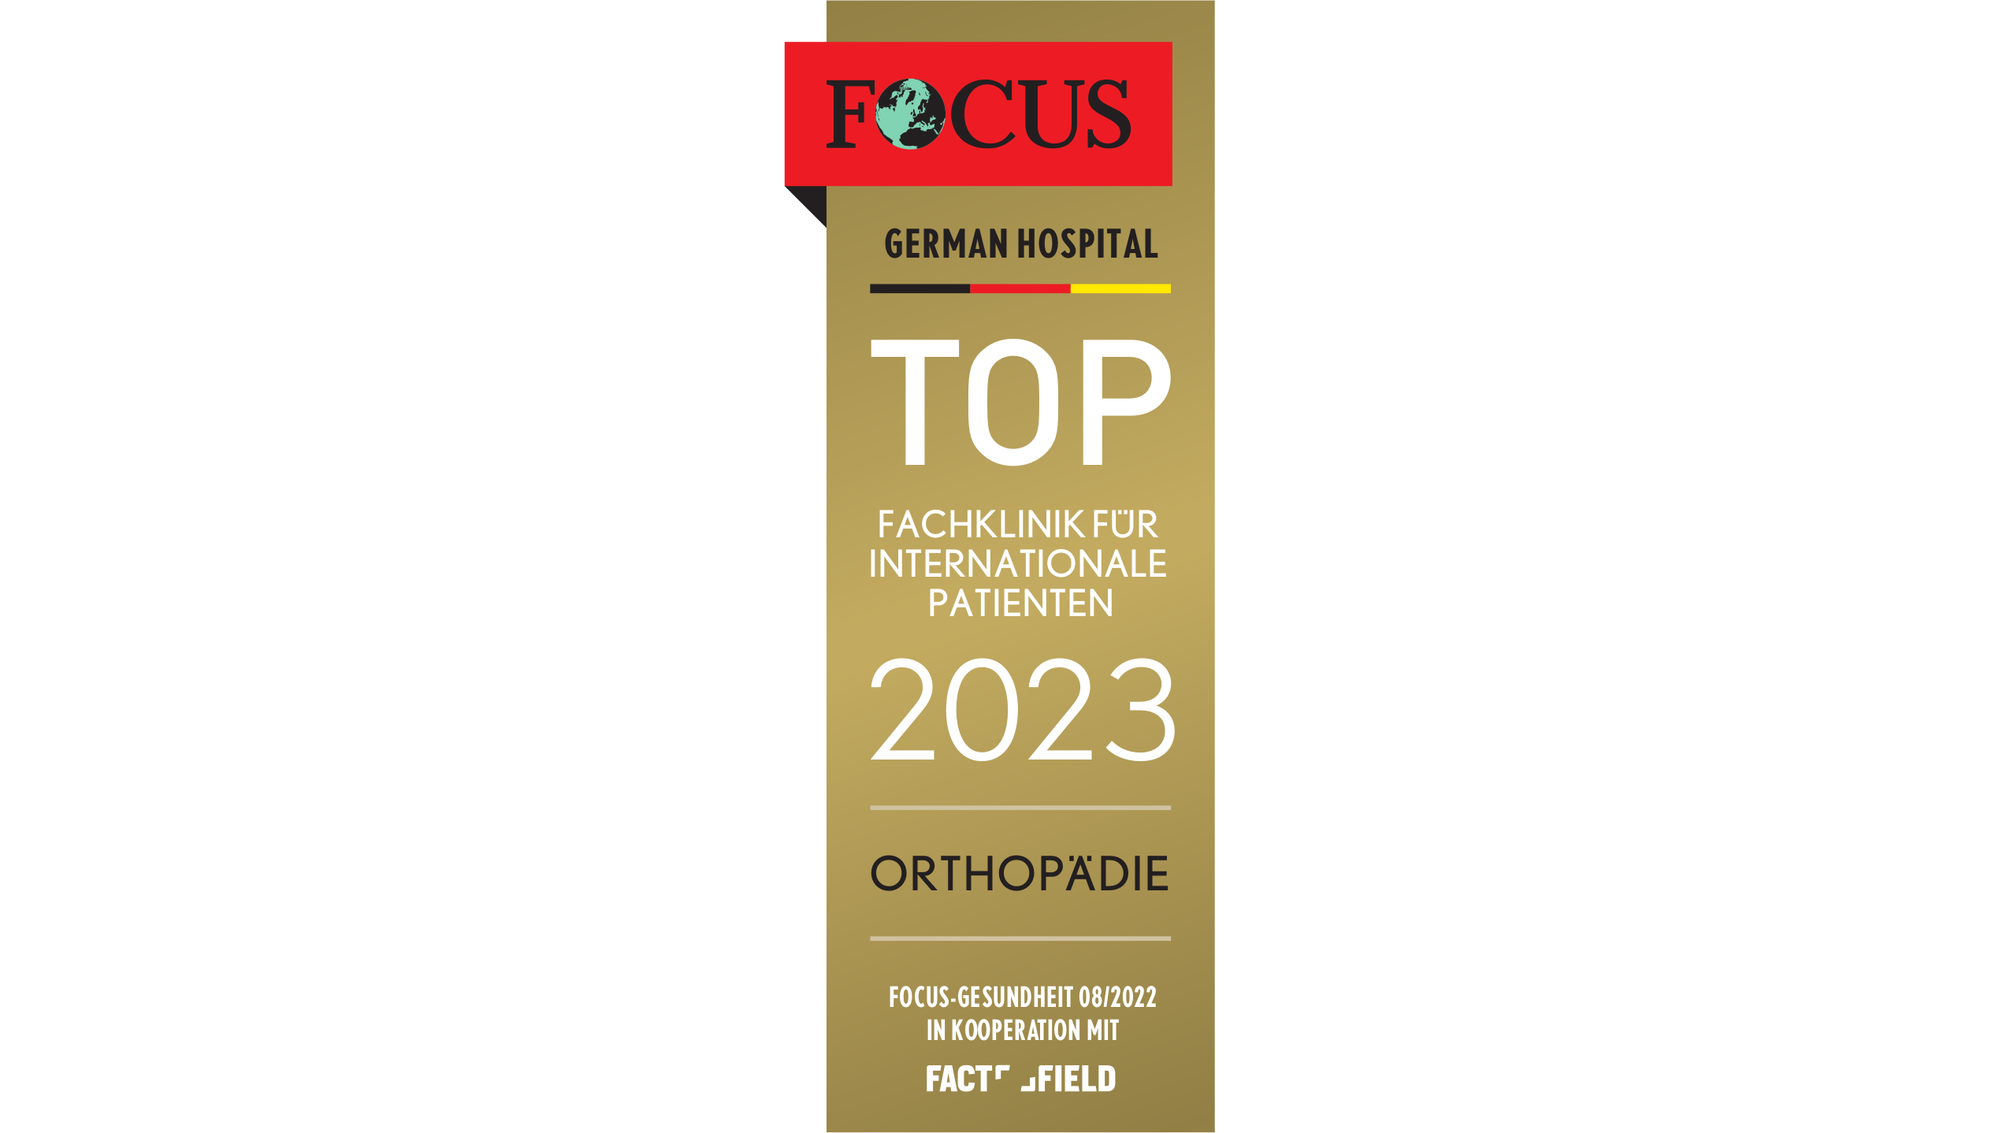 Focus Top Fachklinik für internationale Patienten Orthopädie